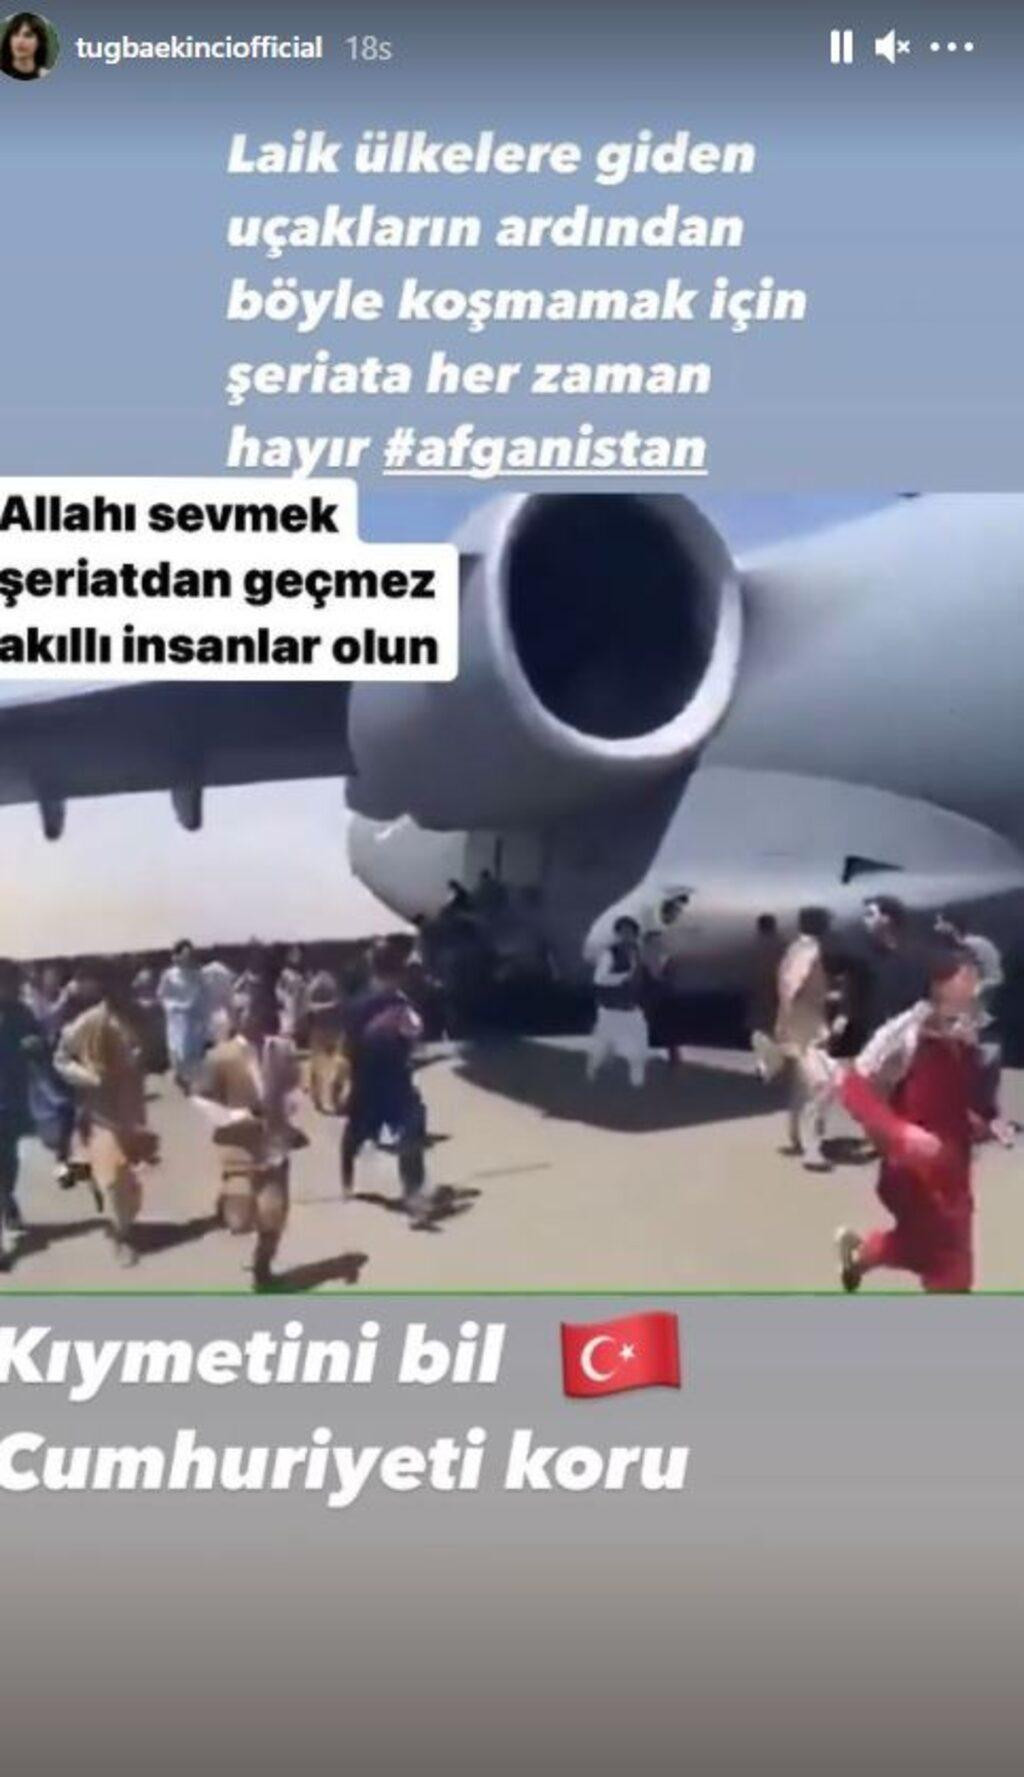 <p>Instagram hesabından Kabil'de Taliban'dan kaçmaya çalışan insanları paylaşan Ekinci şu ifadeleri kullandı:</p><p><em><strong>"Laik ülkelere giden uçakların ardından böyle koşmamak için şeriata her zaman hayır. Kıymetini bil, Cumhuriyet'i koru."</strong></em></p>